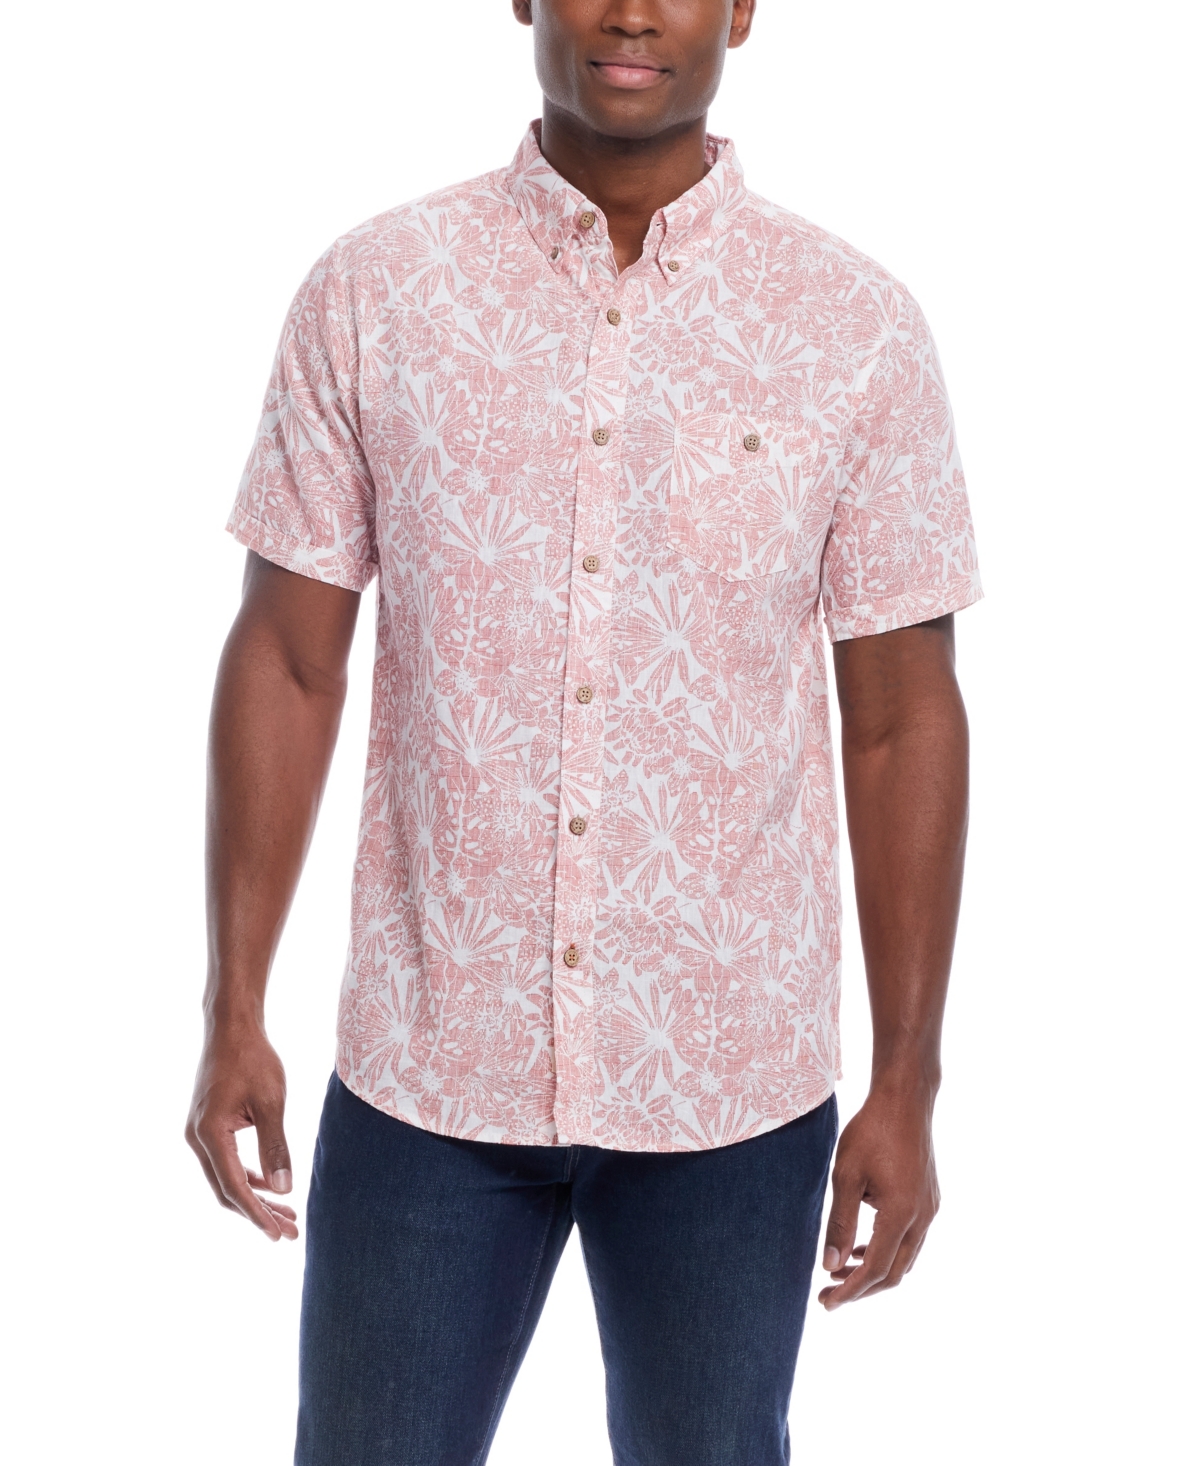 Men's Short Sleeve Print Linen Cotton Shirt - Pink